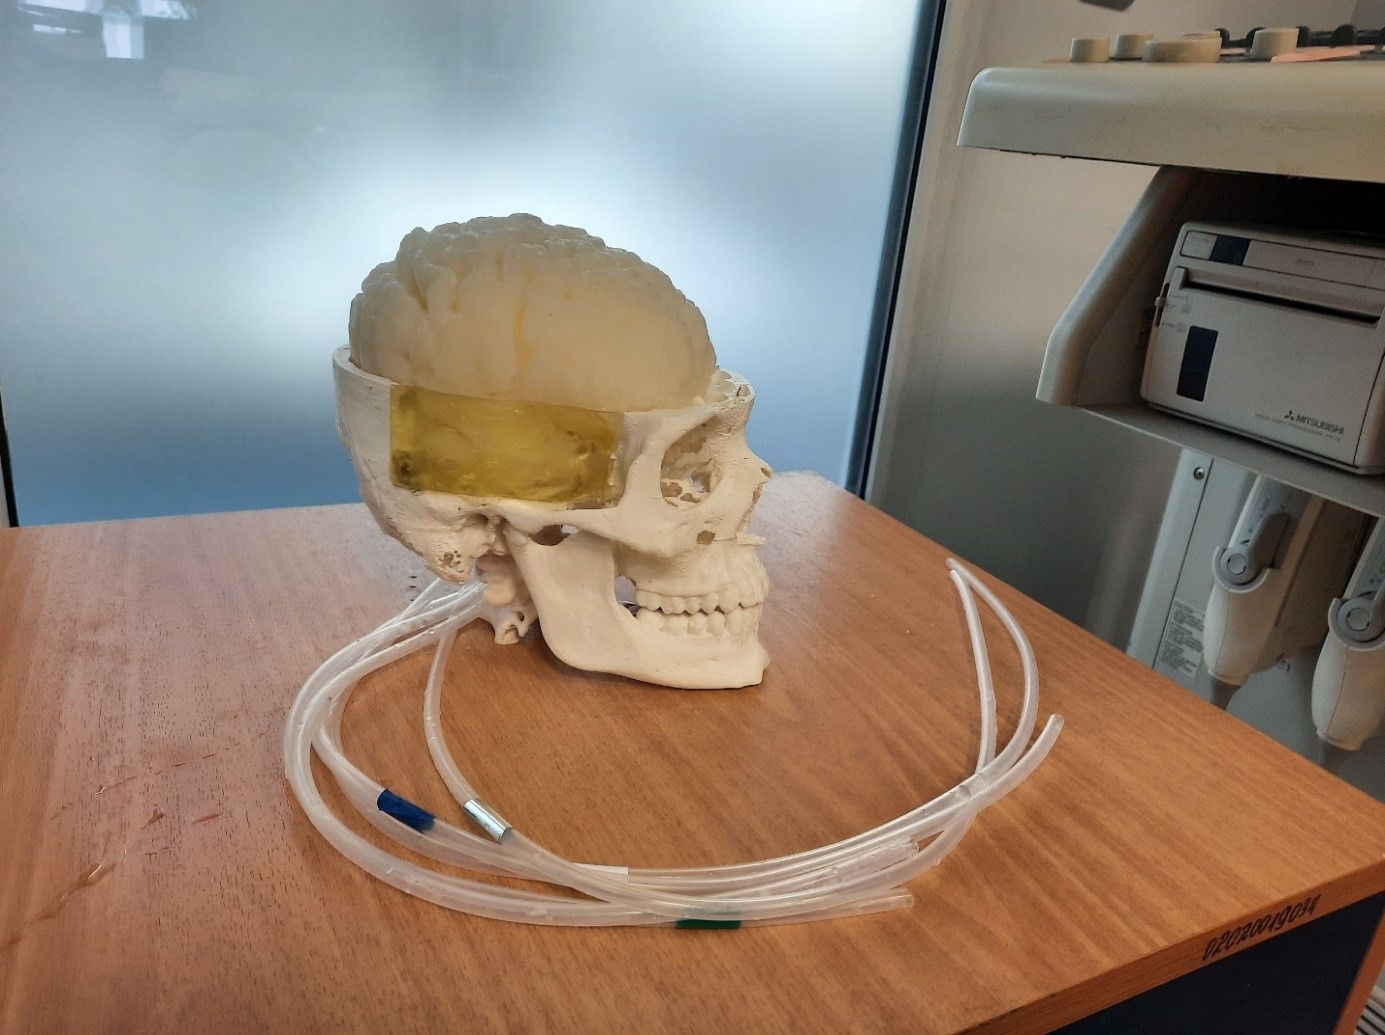 Фантом для исследования сосудов через кости черепа с использованием средств ультразвуковой визуализации, фото 7